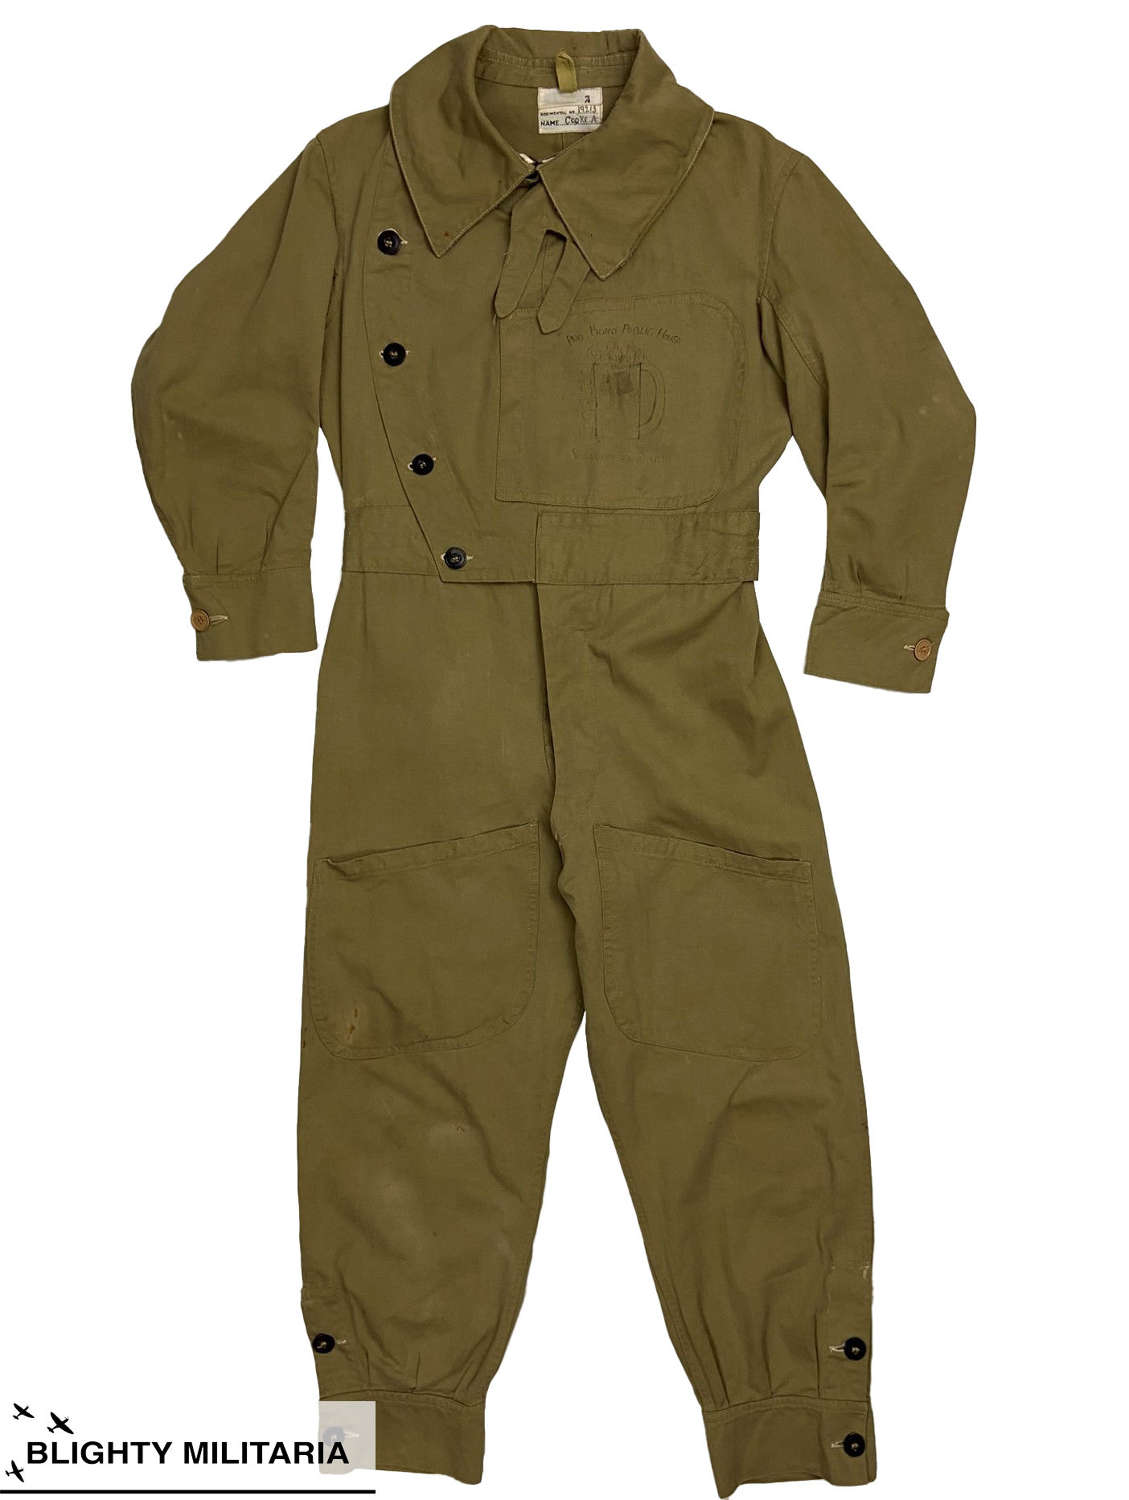 Rare Original WW2 Australian Made Sidcot Suit with Artwork